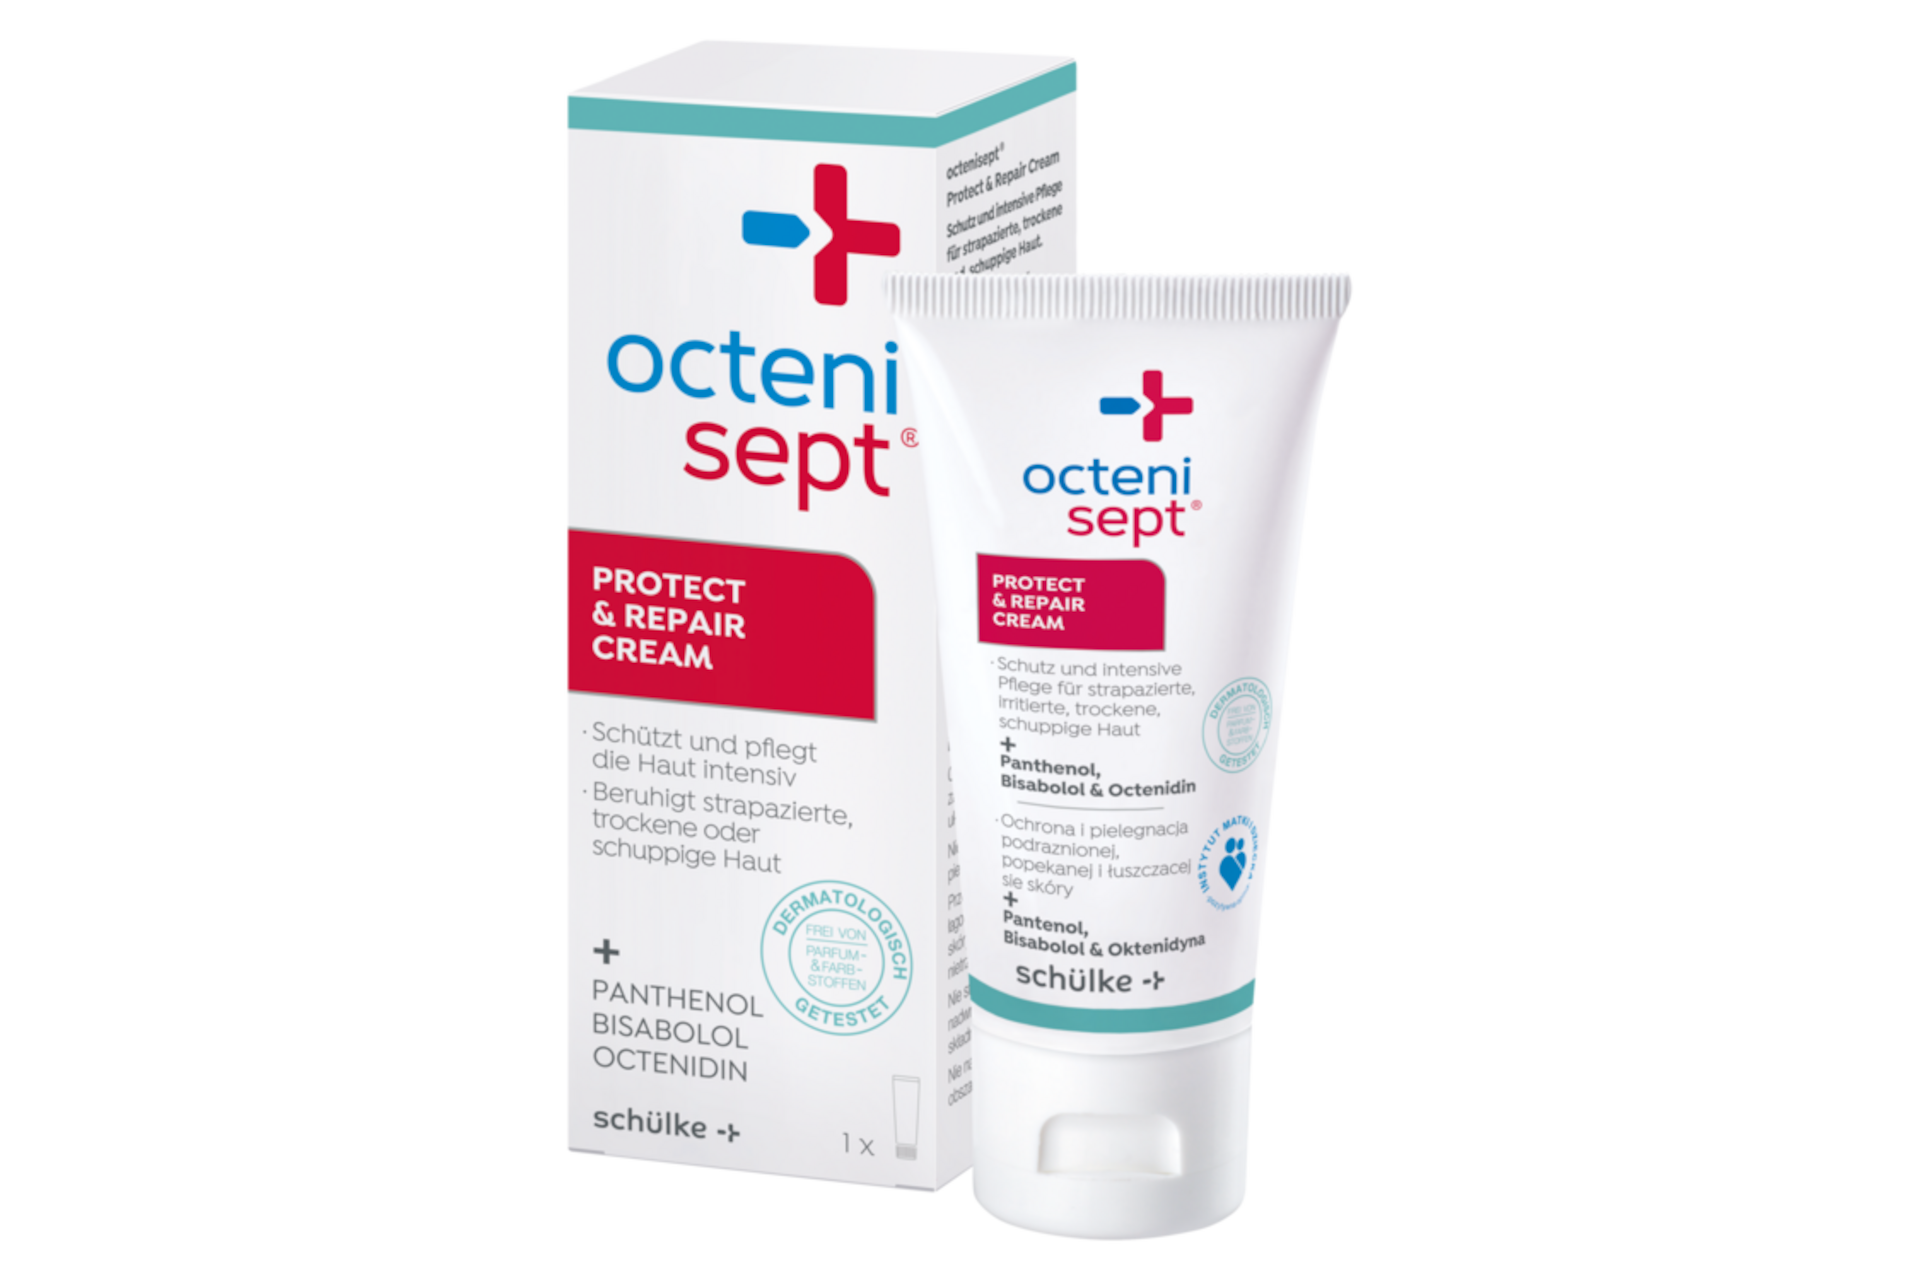 octenisept® protect & repair cream